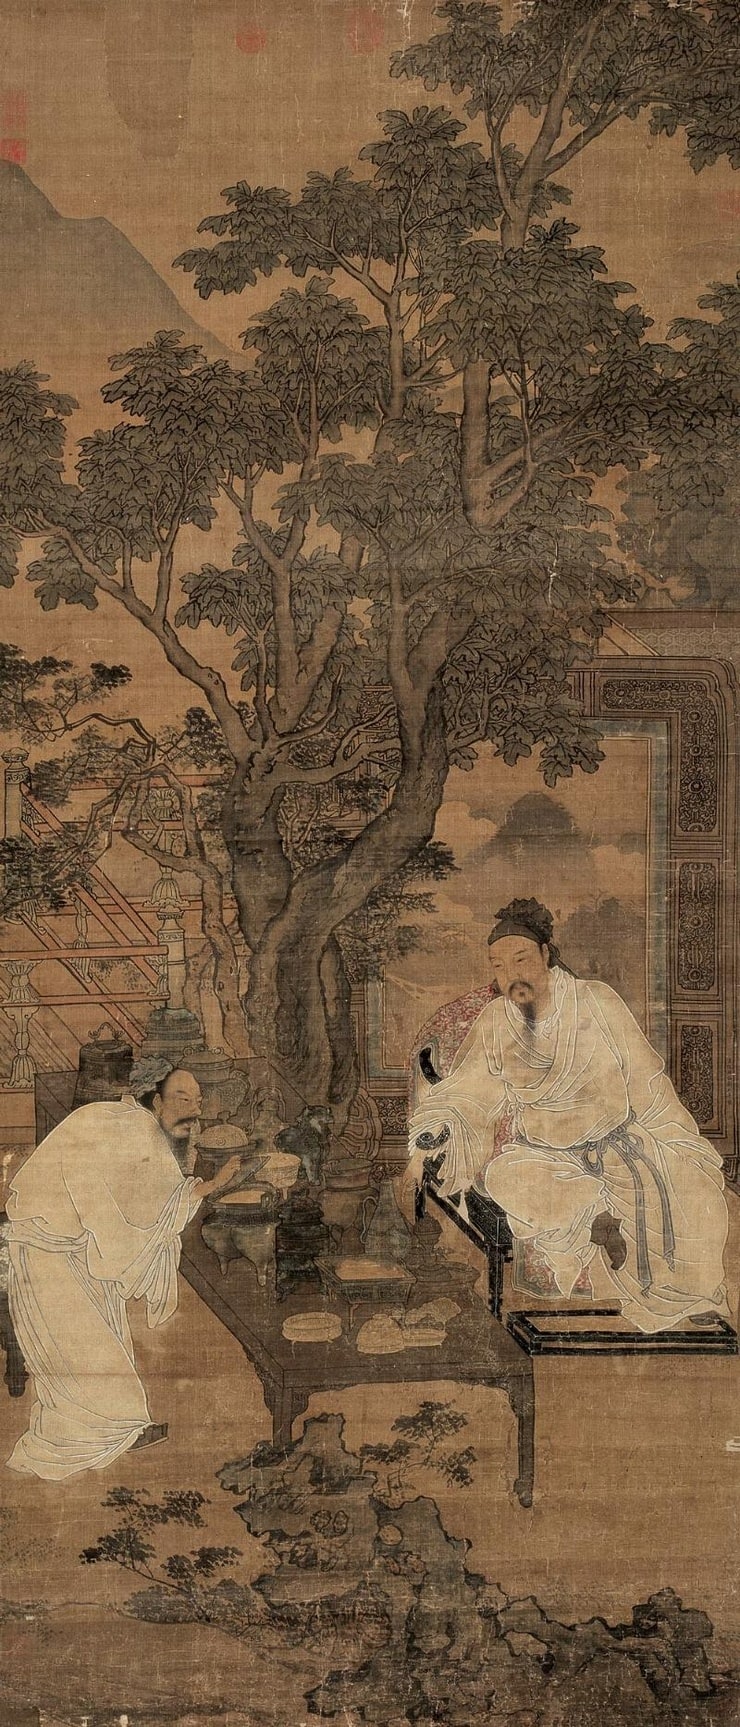 Liu Songnian